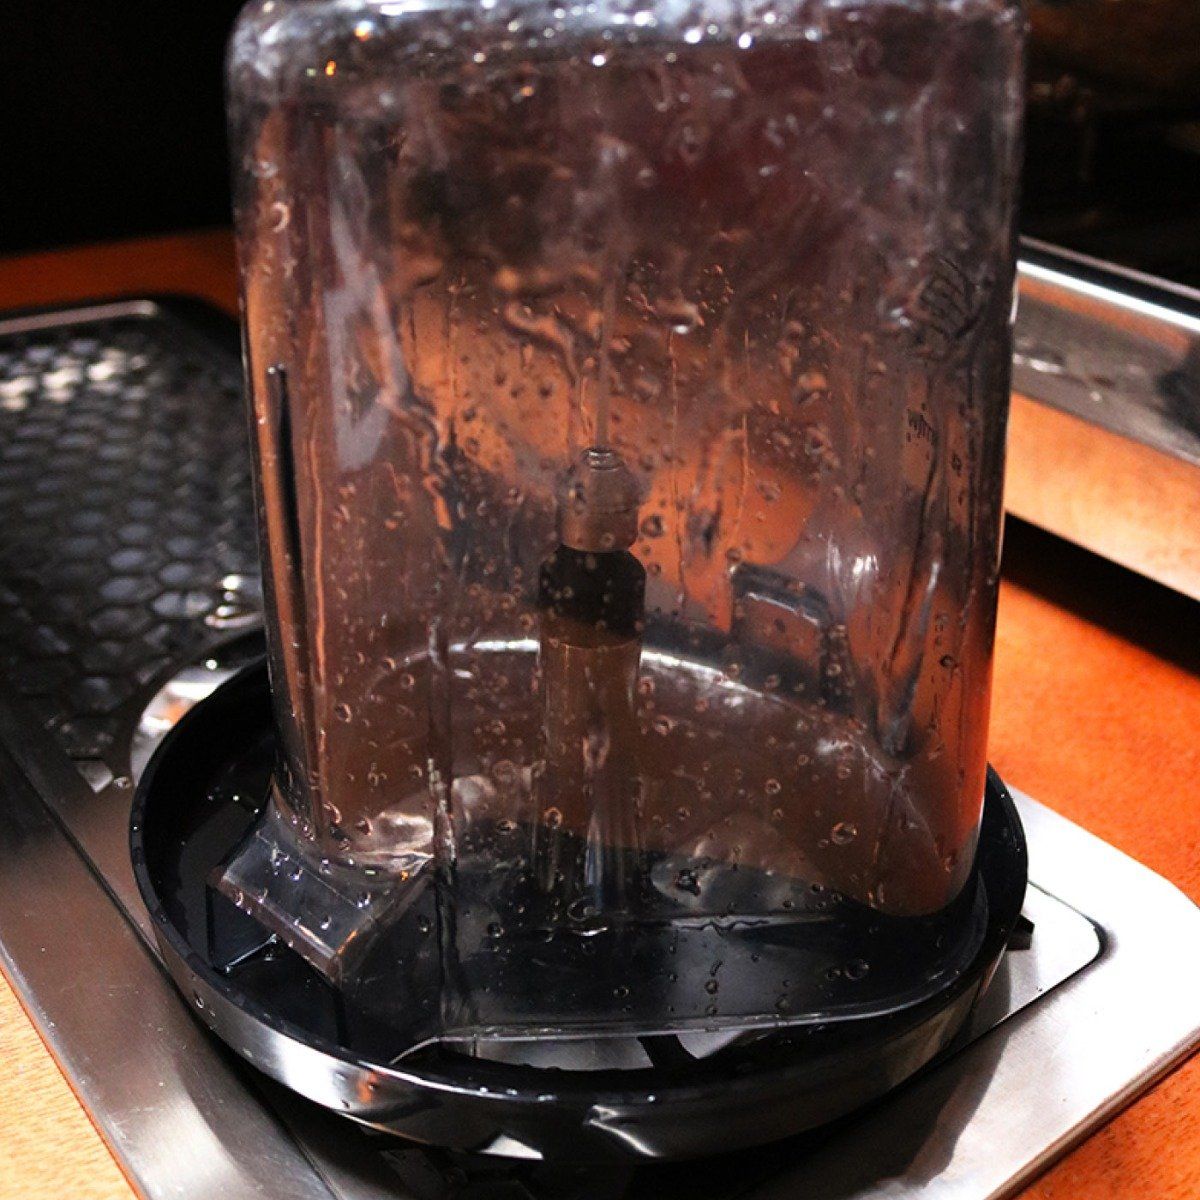 Rhino 水罐沖洗器 - 300 毫米 - 帶攪拌器附件的旋轉噴嘴。美國國家科學基金會批准